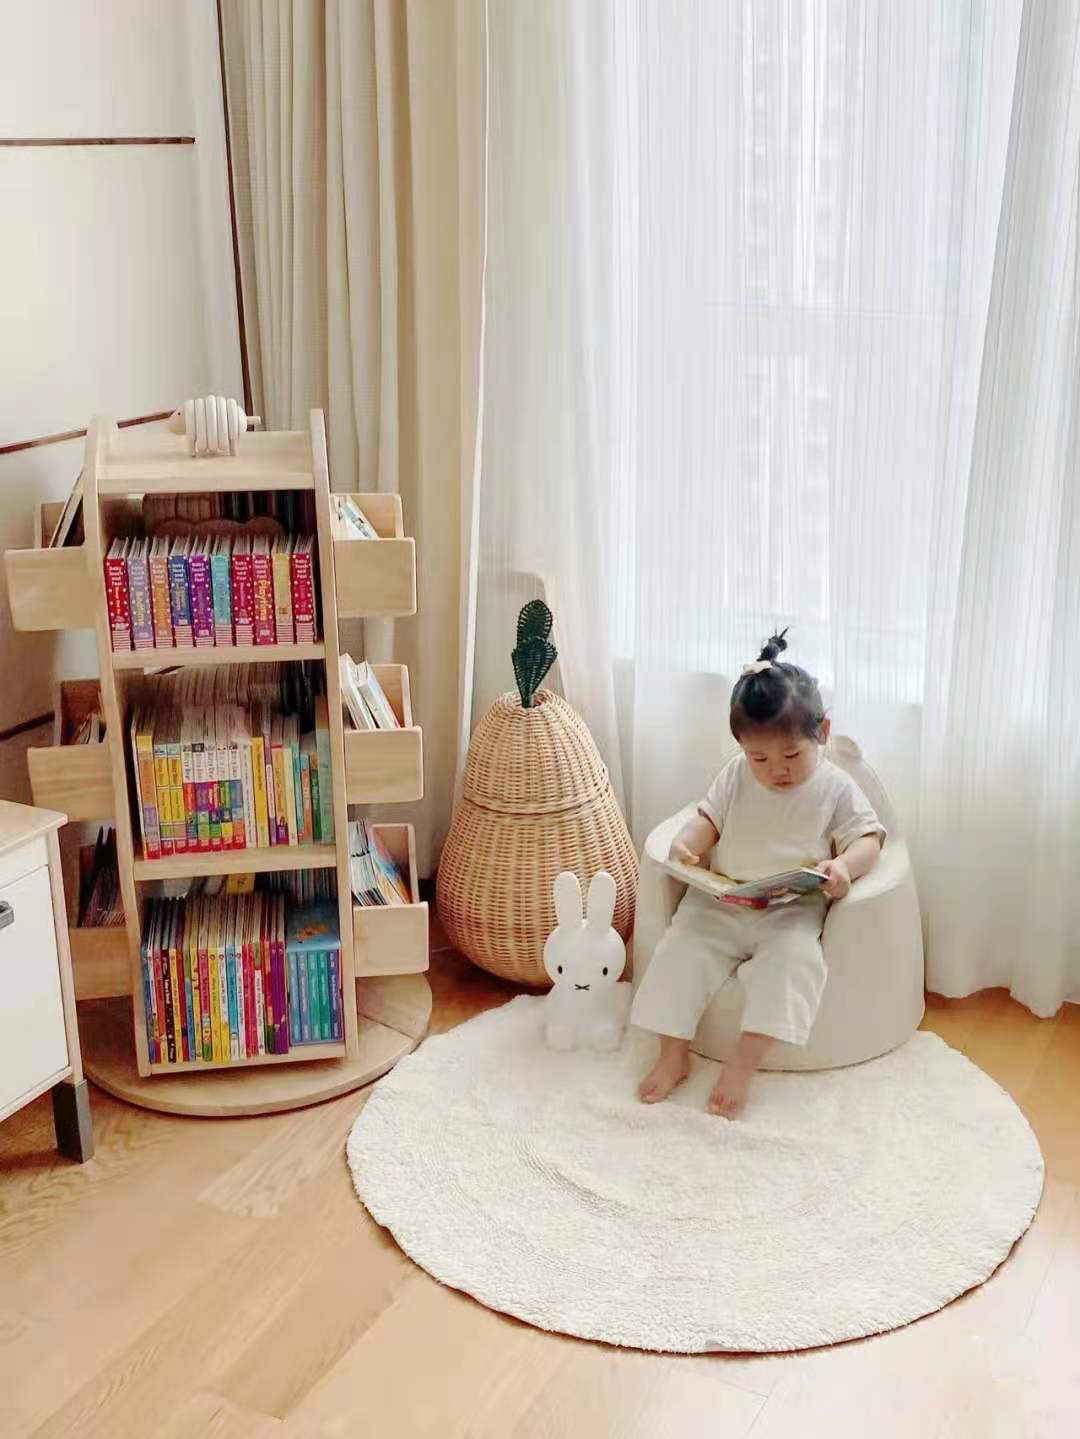 儿童房划分出阅读休闲区域，为孩子提供了一个舒适轻松的娱乐空间。